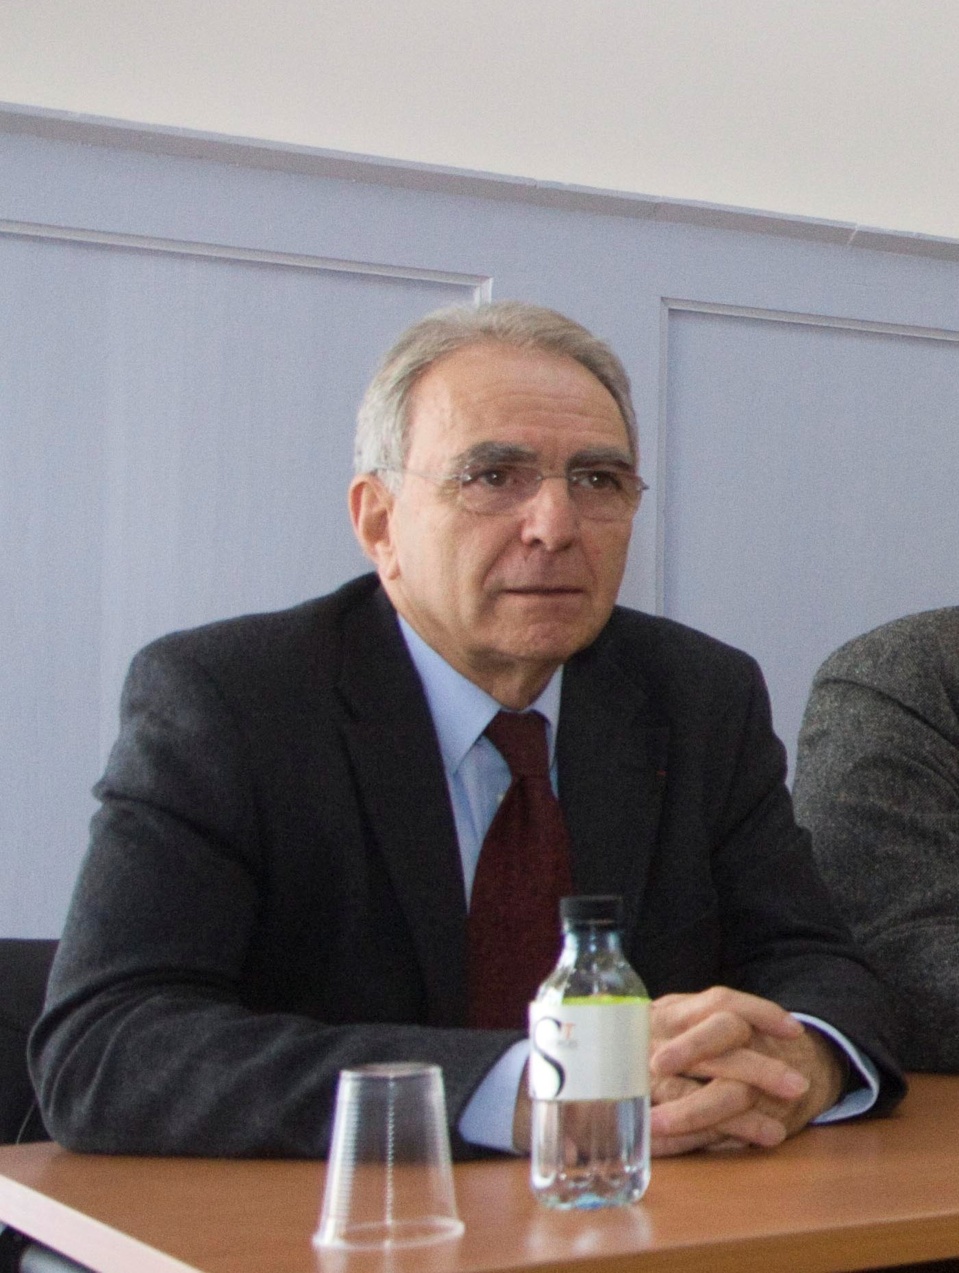 Antoine Sindalli, Presidente di a cummissione "Tupunimia"